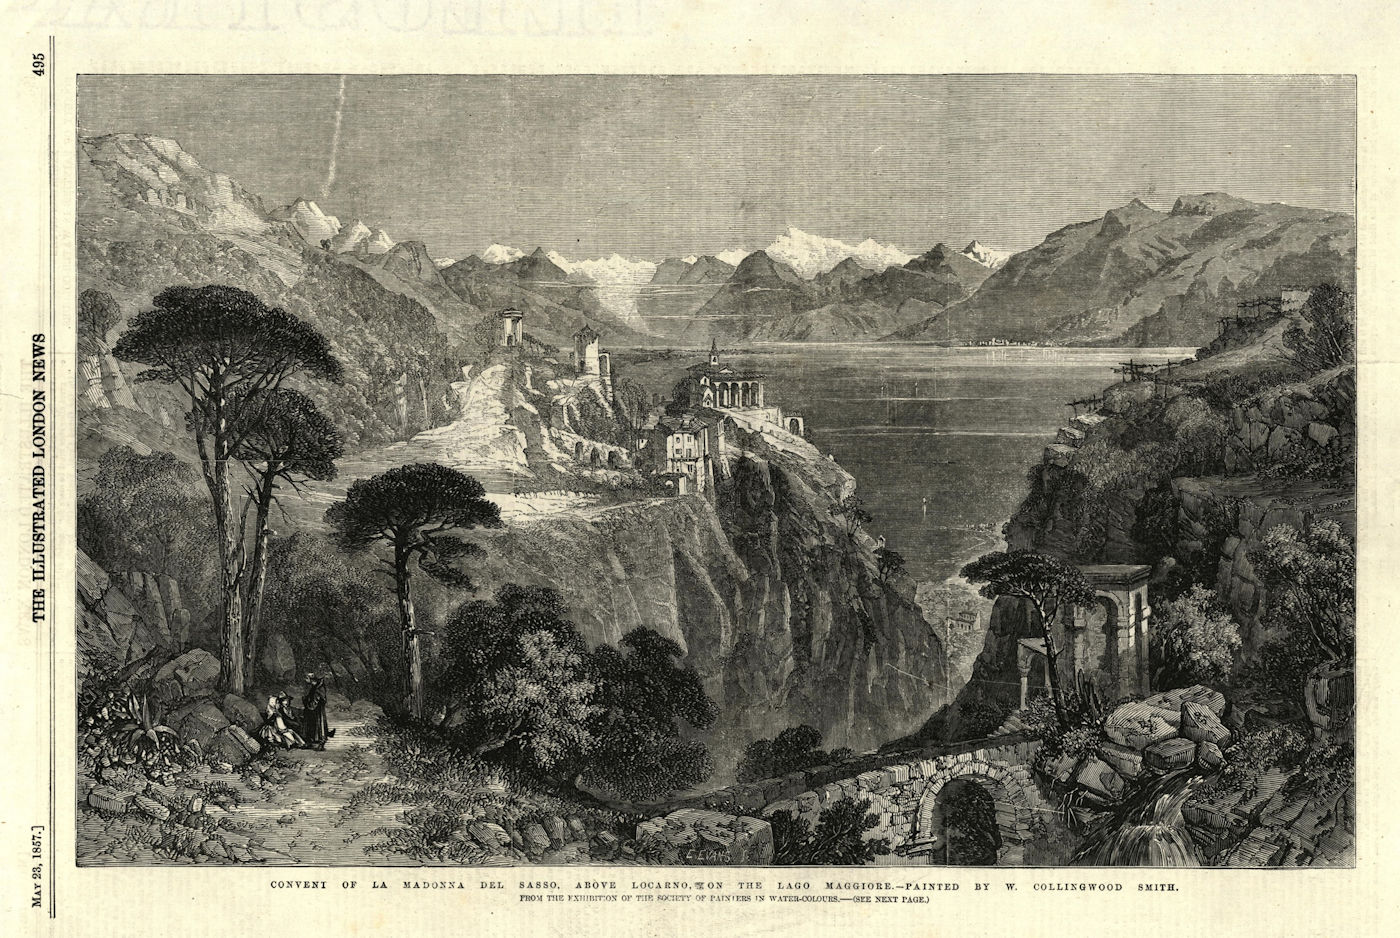 Associate Product La Madonna del Sasso convent, above Locarno, on Lake Maggiore. Switzerland 1857